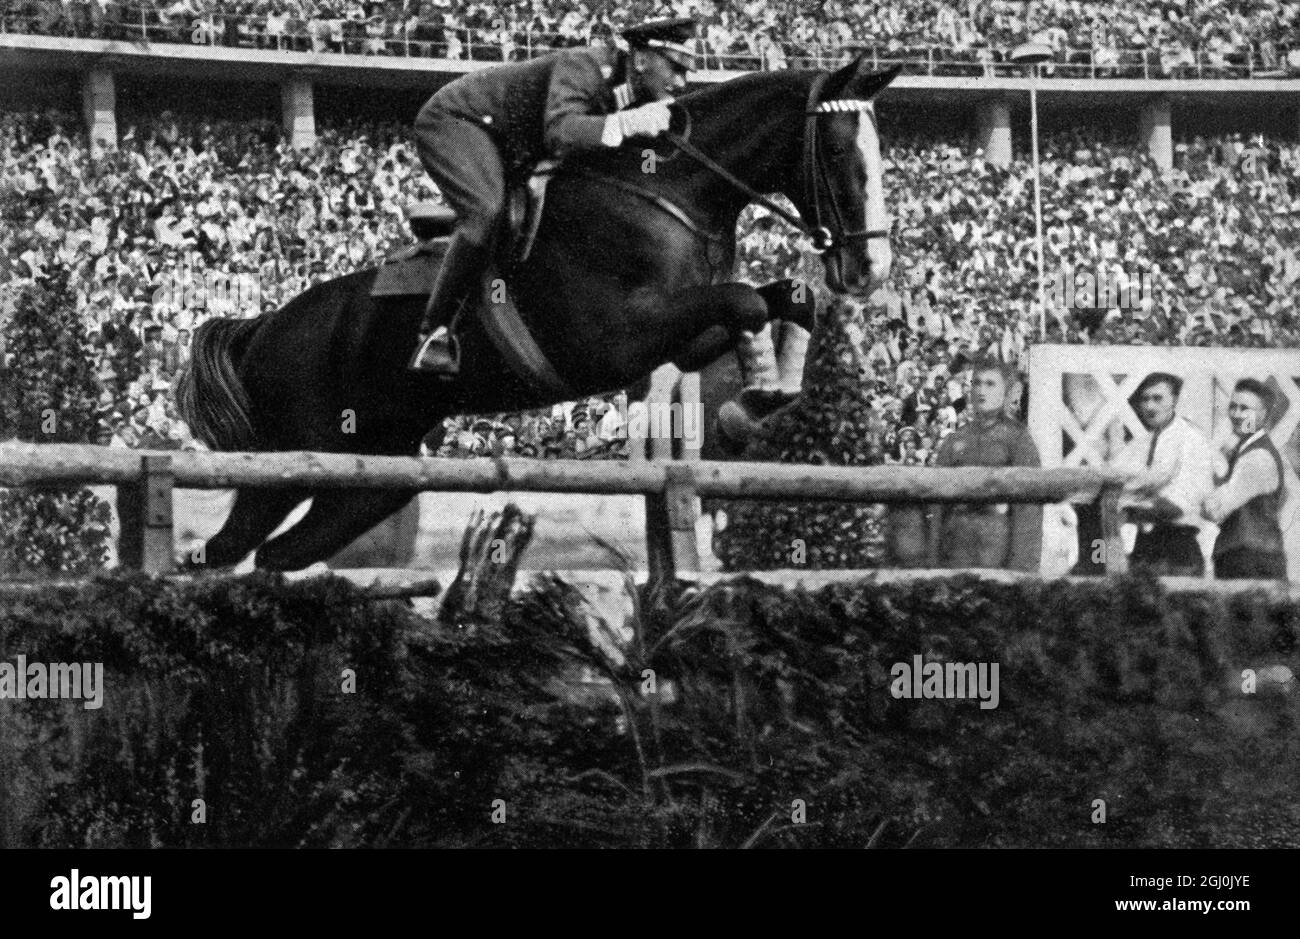 1936 Olympics, Berlin - Riding - First Lieutenant Kurt Hasse, winner on Tora in the show jumping event. (Oberleutnant Kurt Hasse auf ''Tora'' siegte durch einen grossartigen Ritt im grossen Jagdspringen.) ©TopFoto Stock Photo